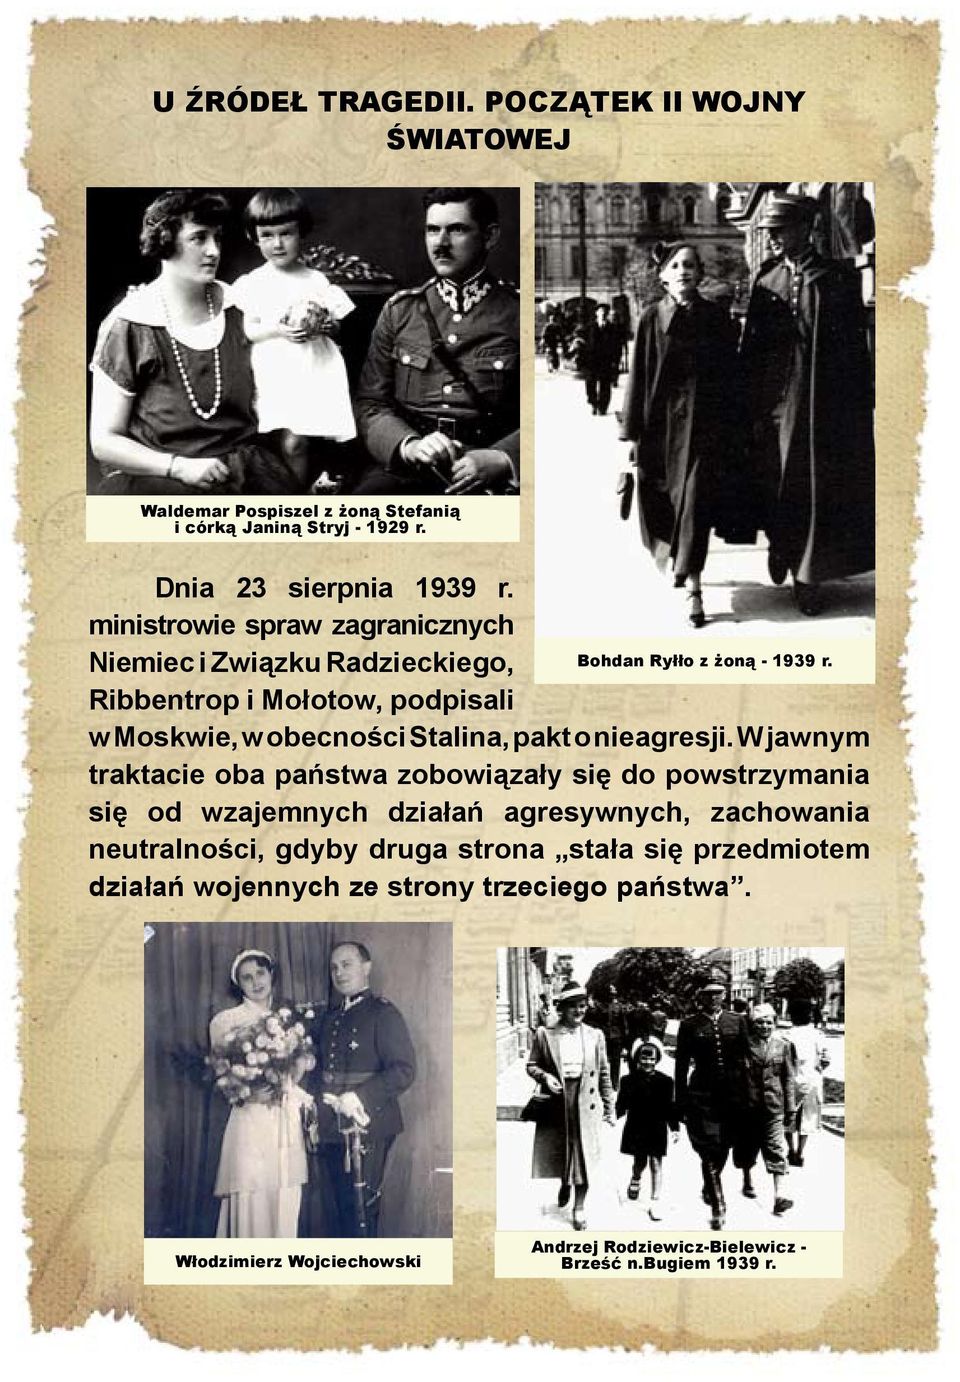 Ribbentrop i Mołotow, podpisali w Moskwie, w obecności Stalina, pakt o nieagresji.